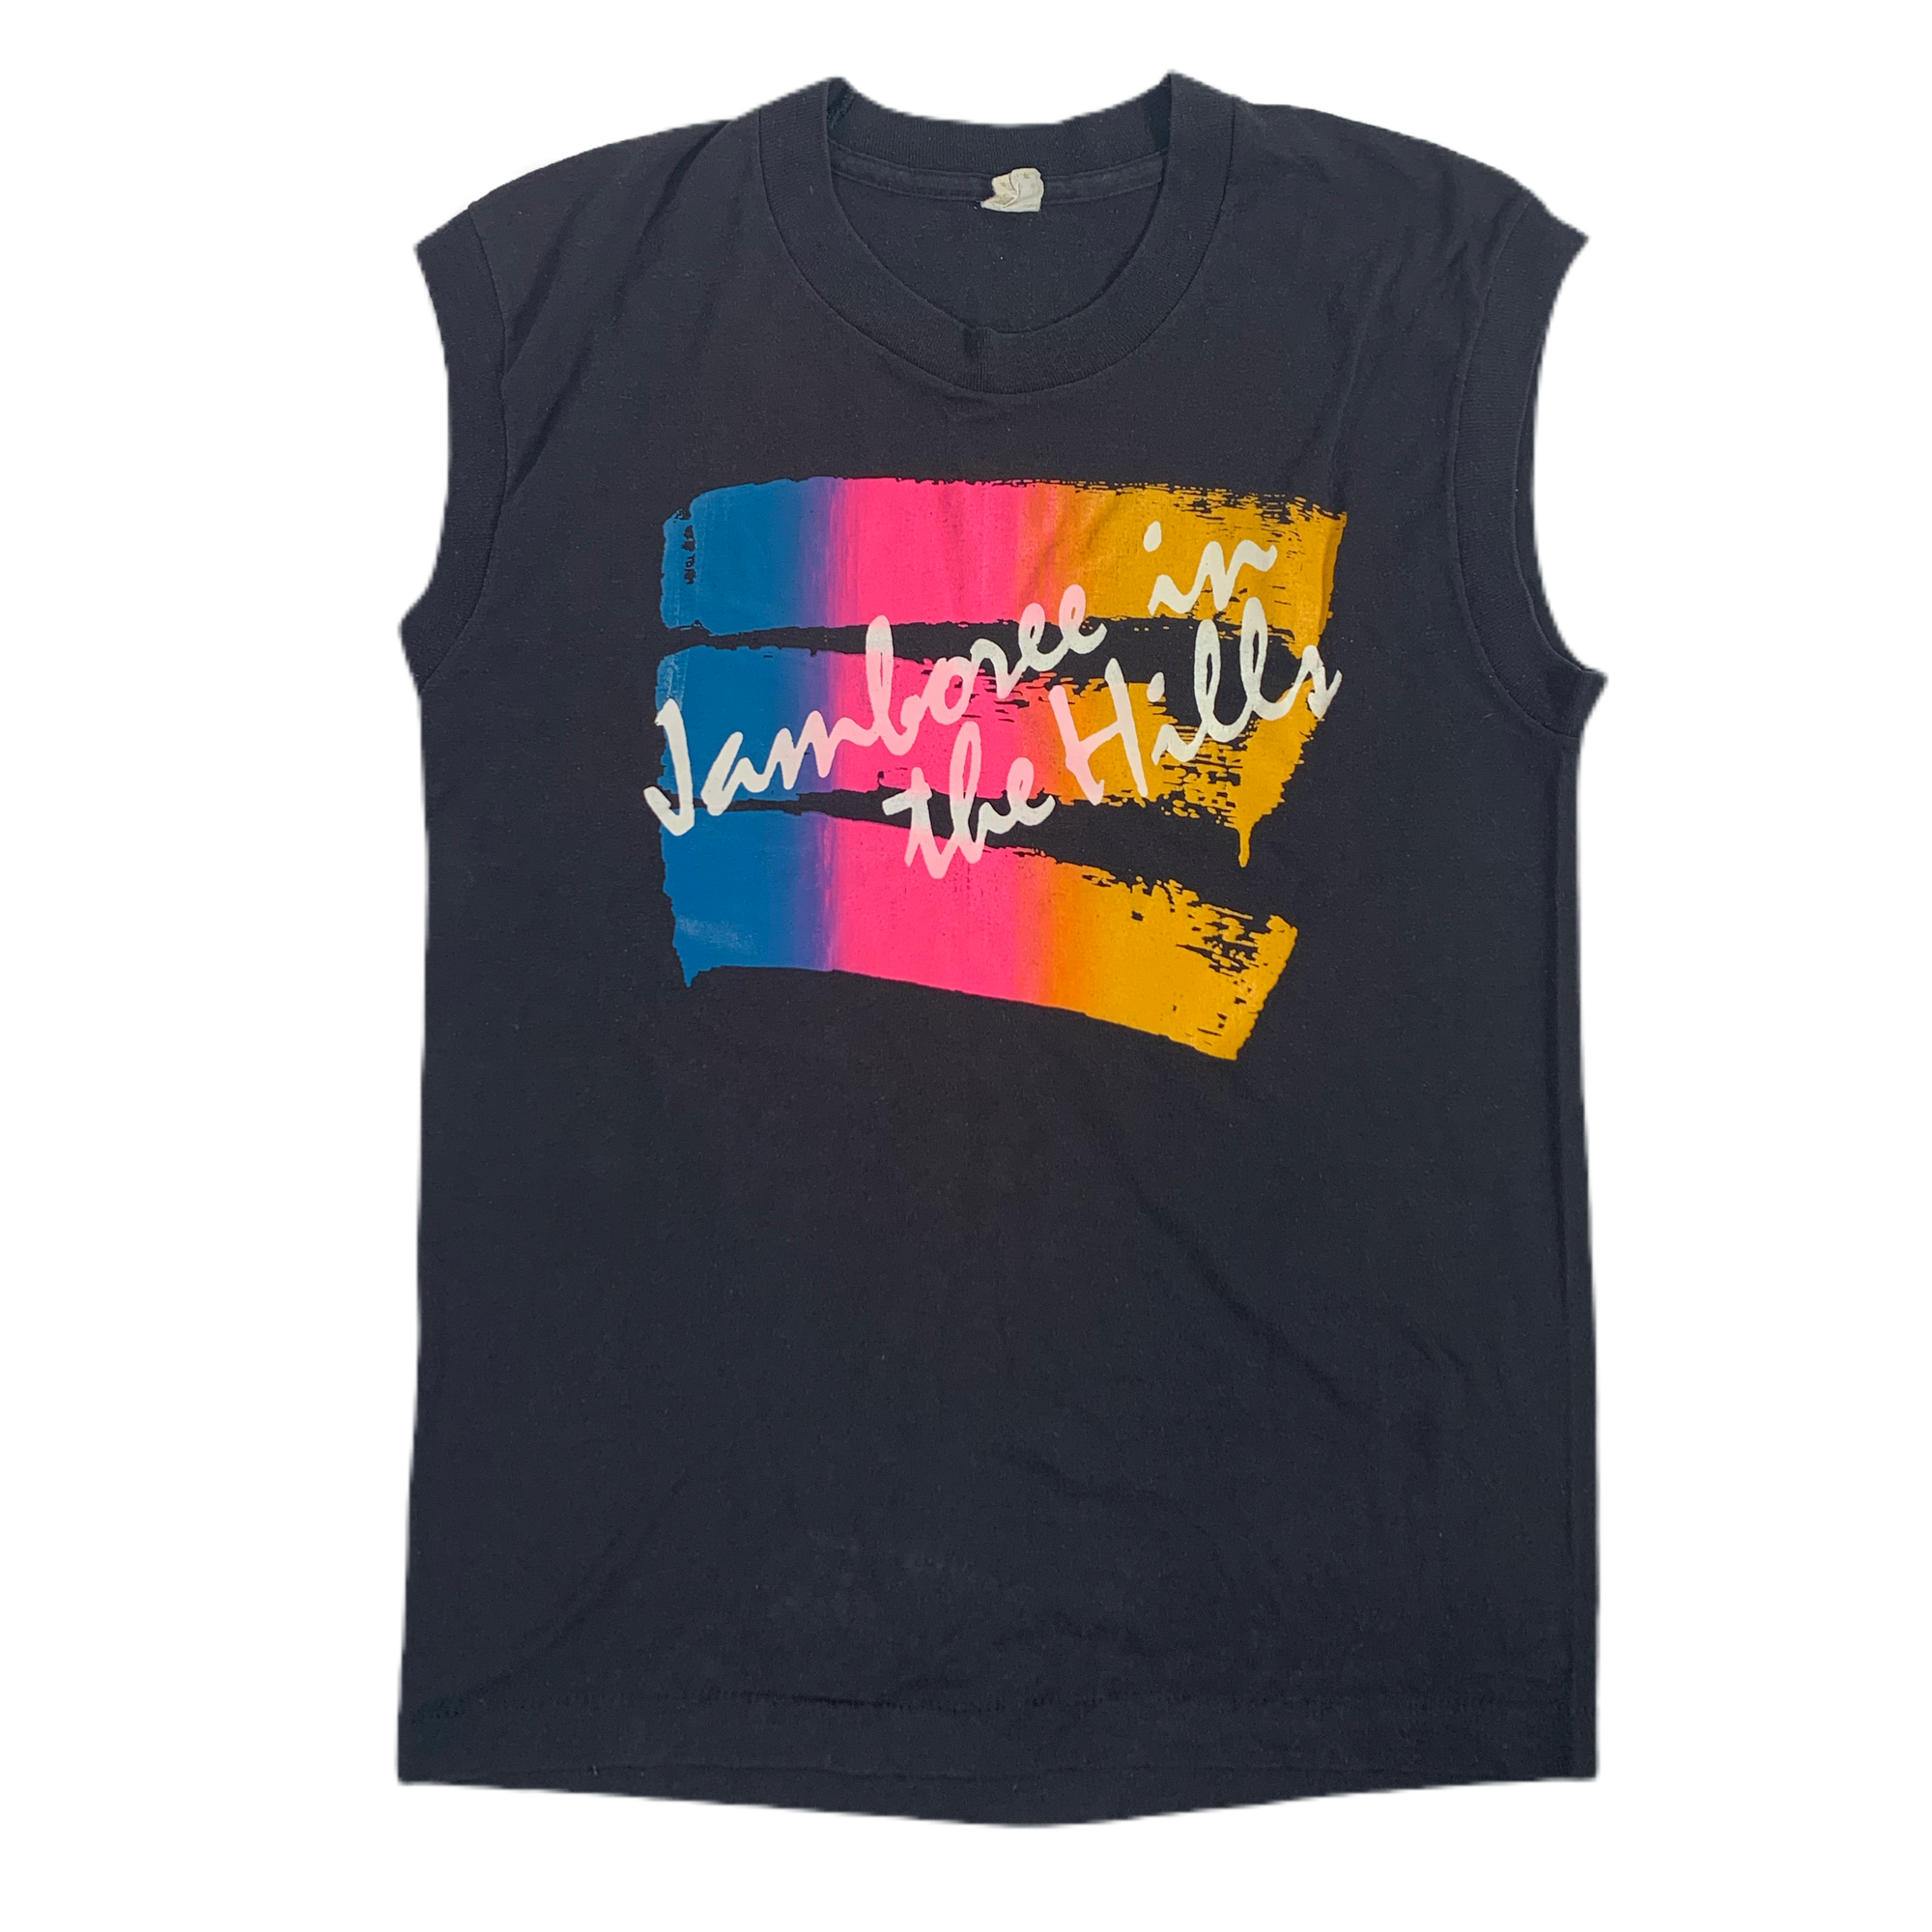 Vintage Jamboree In The Hills “Ohio” T-Shirt - jointcustodydc